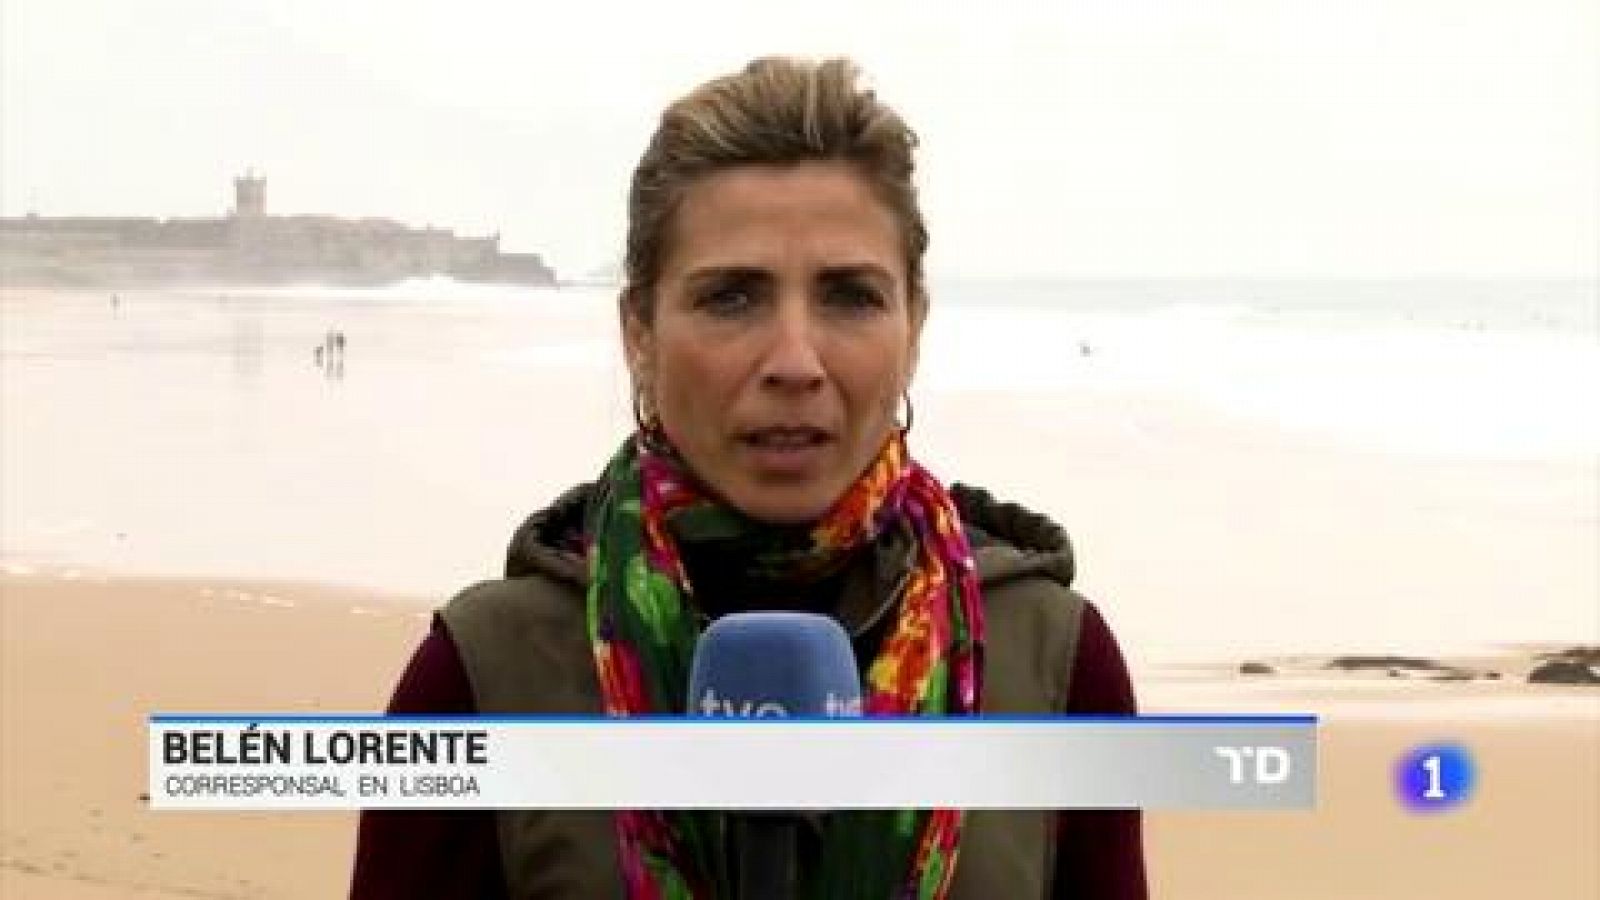 Surf - El sufista Alex Botelho se recupera tras su espectacular caída en Nazaré - RTVE.es